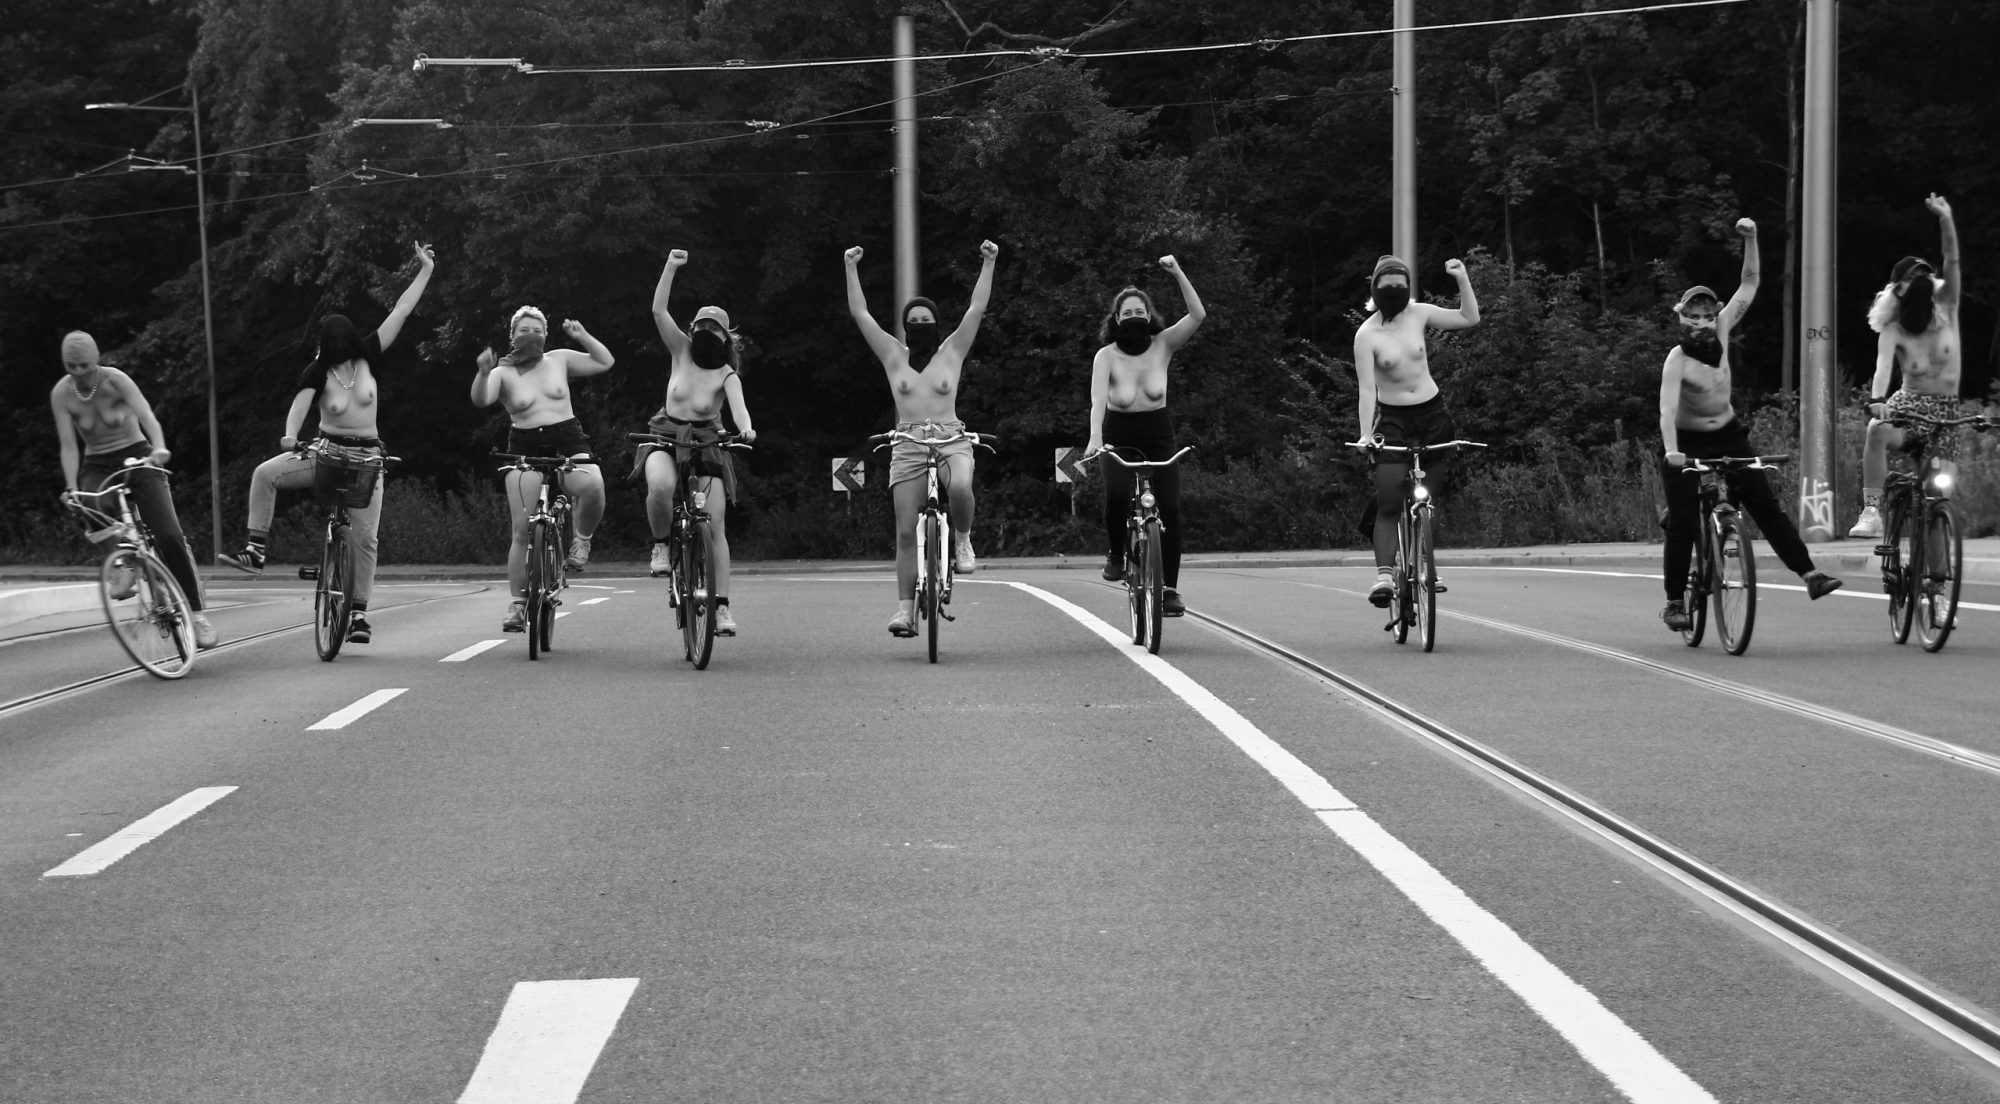 Schwarz-weiß Foto. 9 Personen sitzen auf dem Fahrrad. Oberkörperfrei und vermummt fahren sie auf Betrachter:in zu.